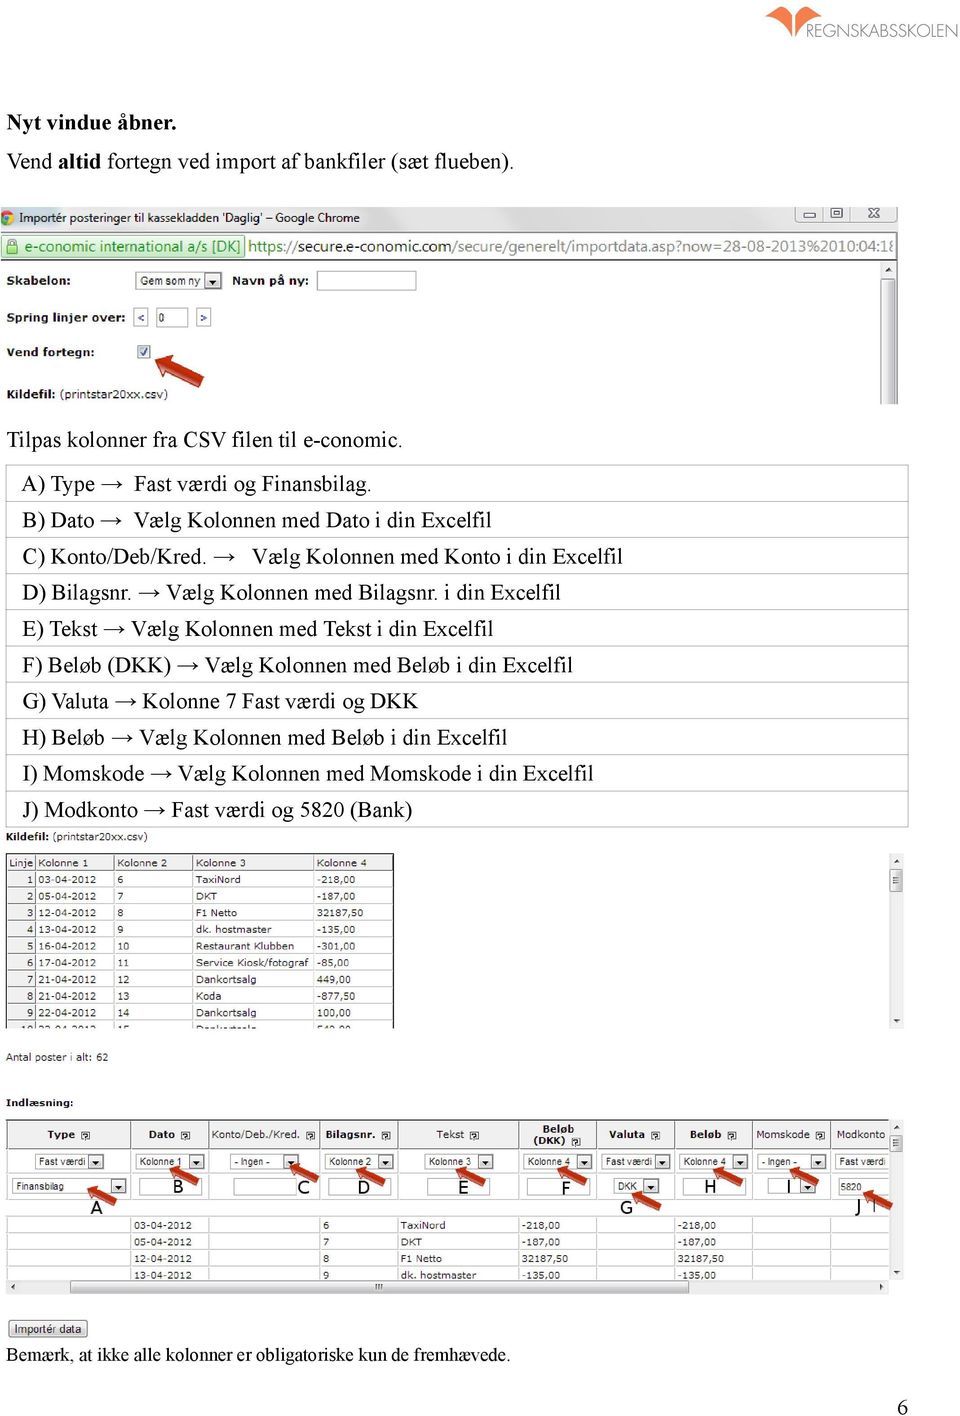 i din Excelfil E) Tekst Vælg Kolonnen med Tekst i din Excelfil F) Beløb (DKK) Vælg Kolonnen med Beløb i din Excelfil G) Valuta Kolonne 7 Fast værdi og DKK H) Beløb